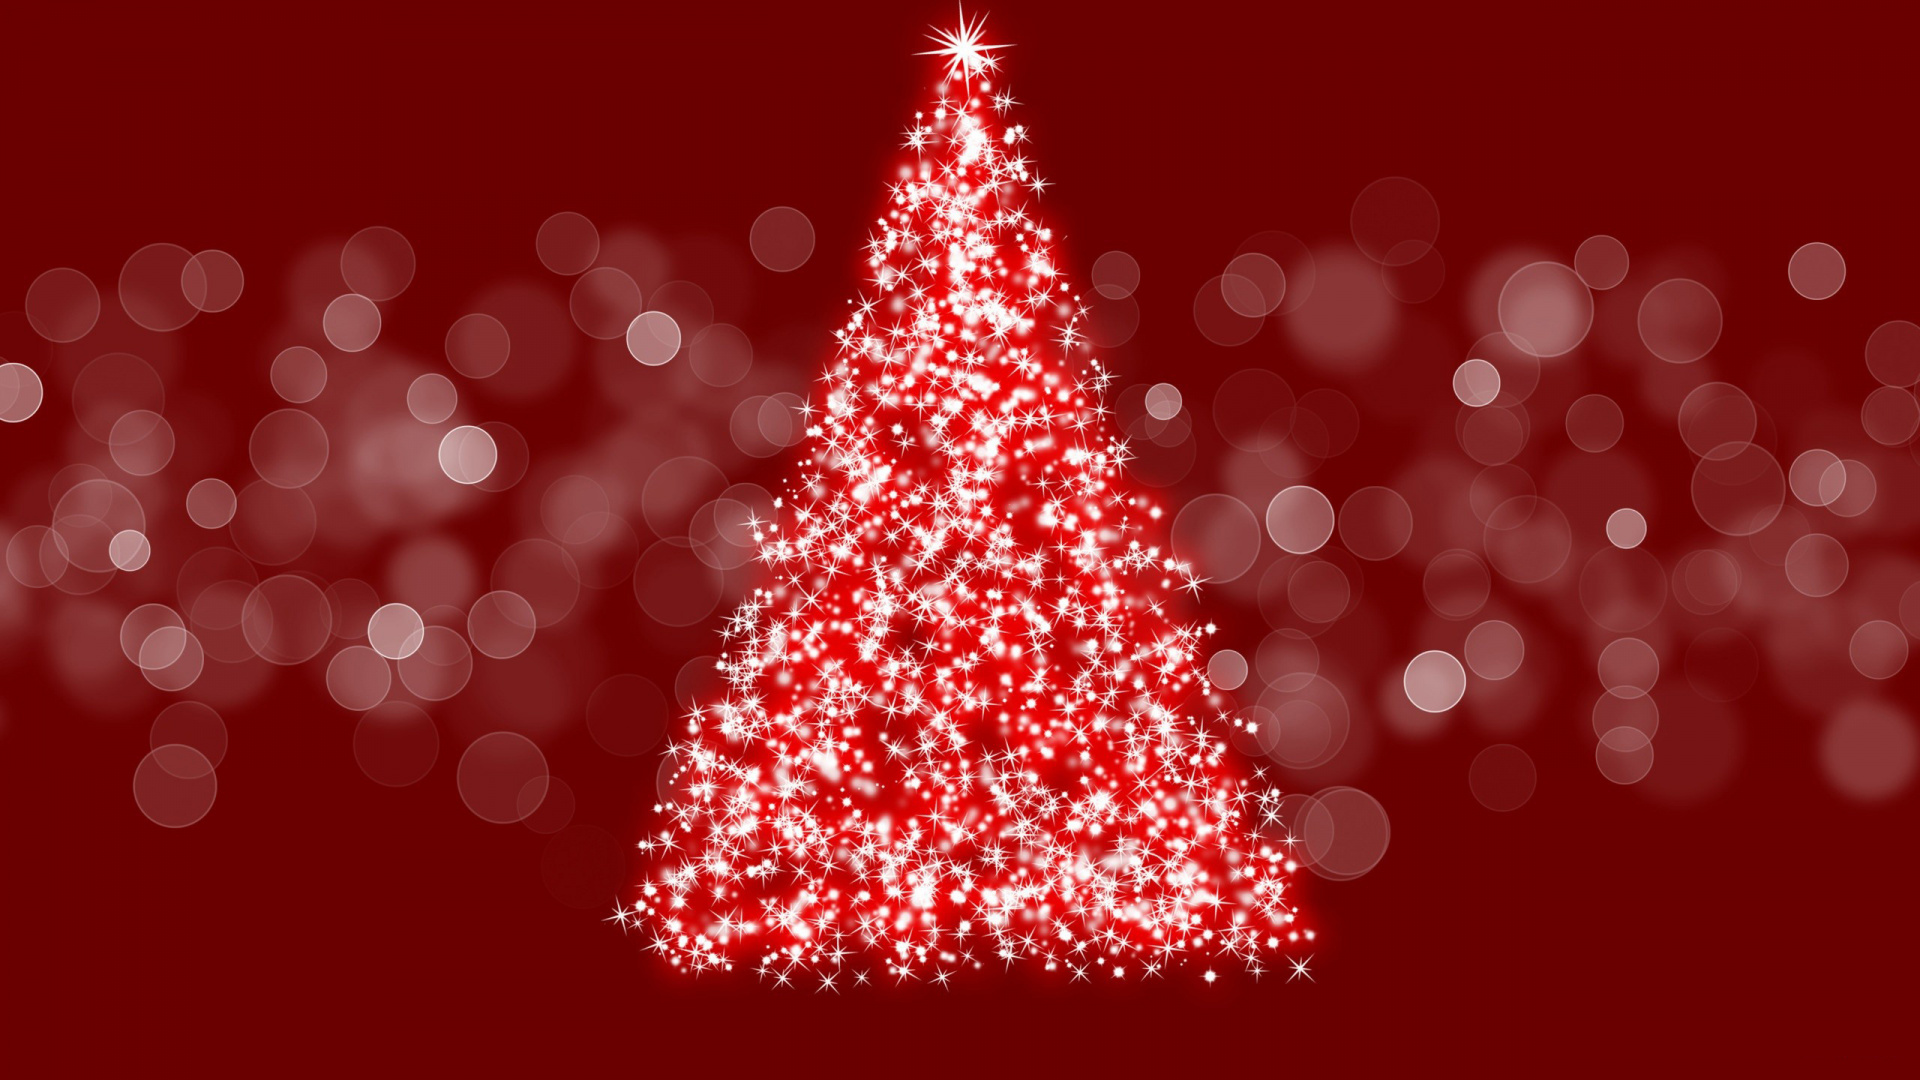 圣诞节那天, 圣诞树, 圣诞装饰, 圣诞节的装饰品, 圣诞节 壁纸 1920x1080 允许